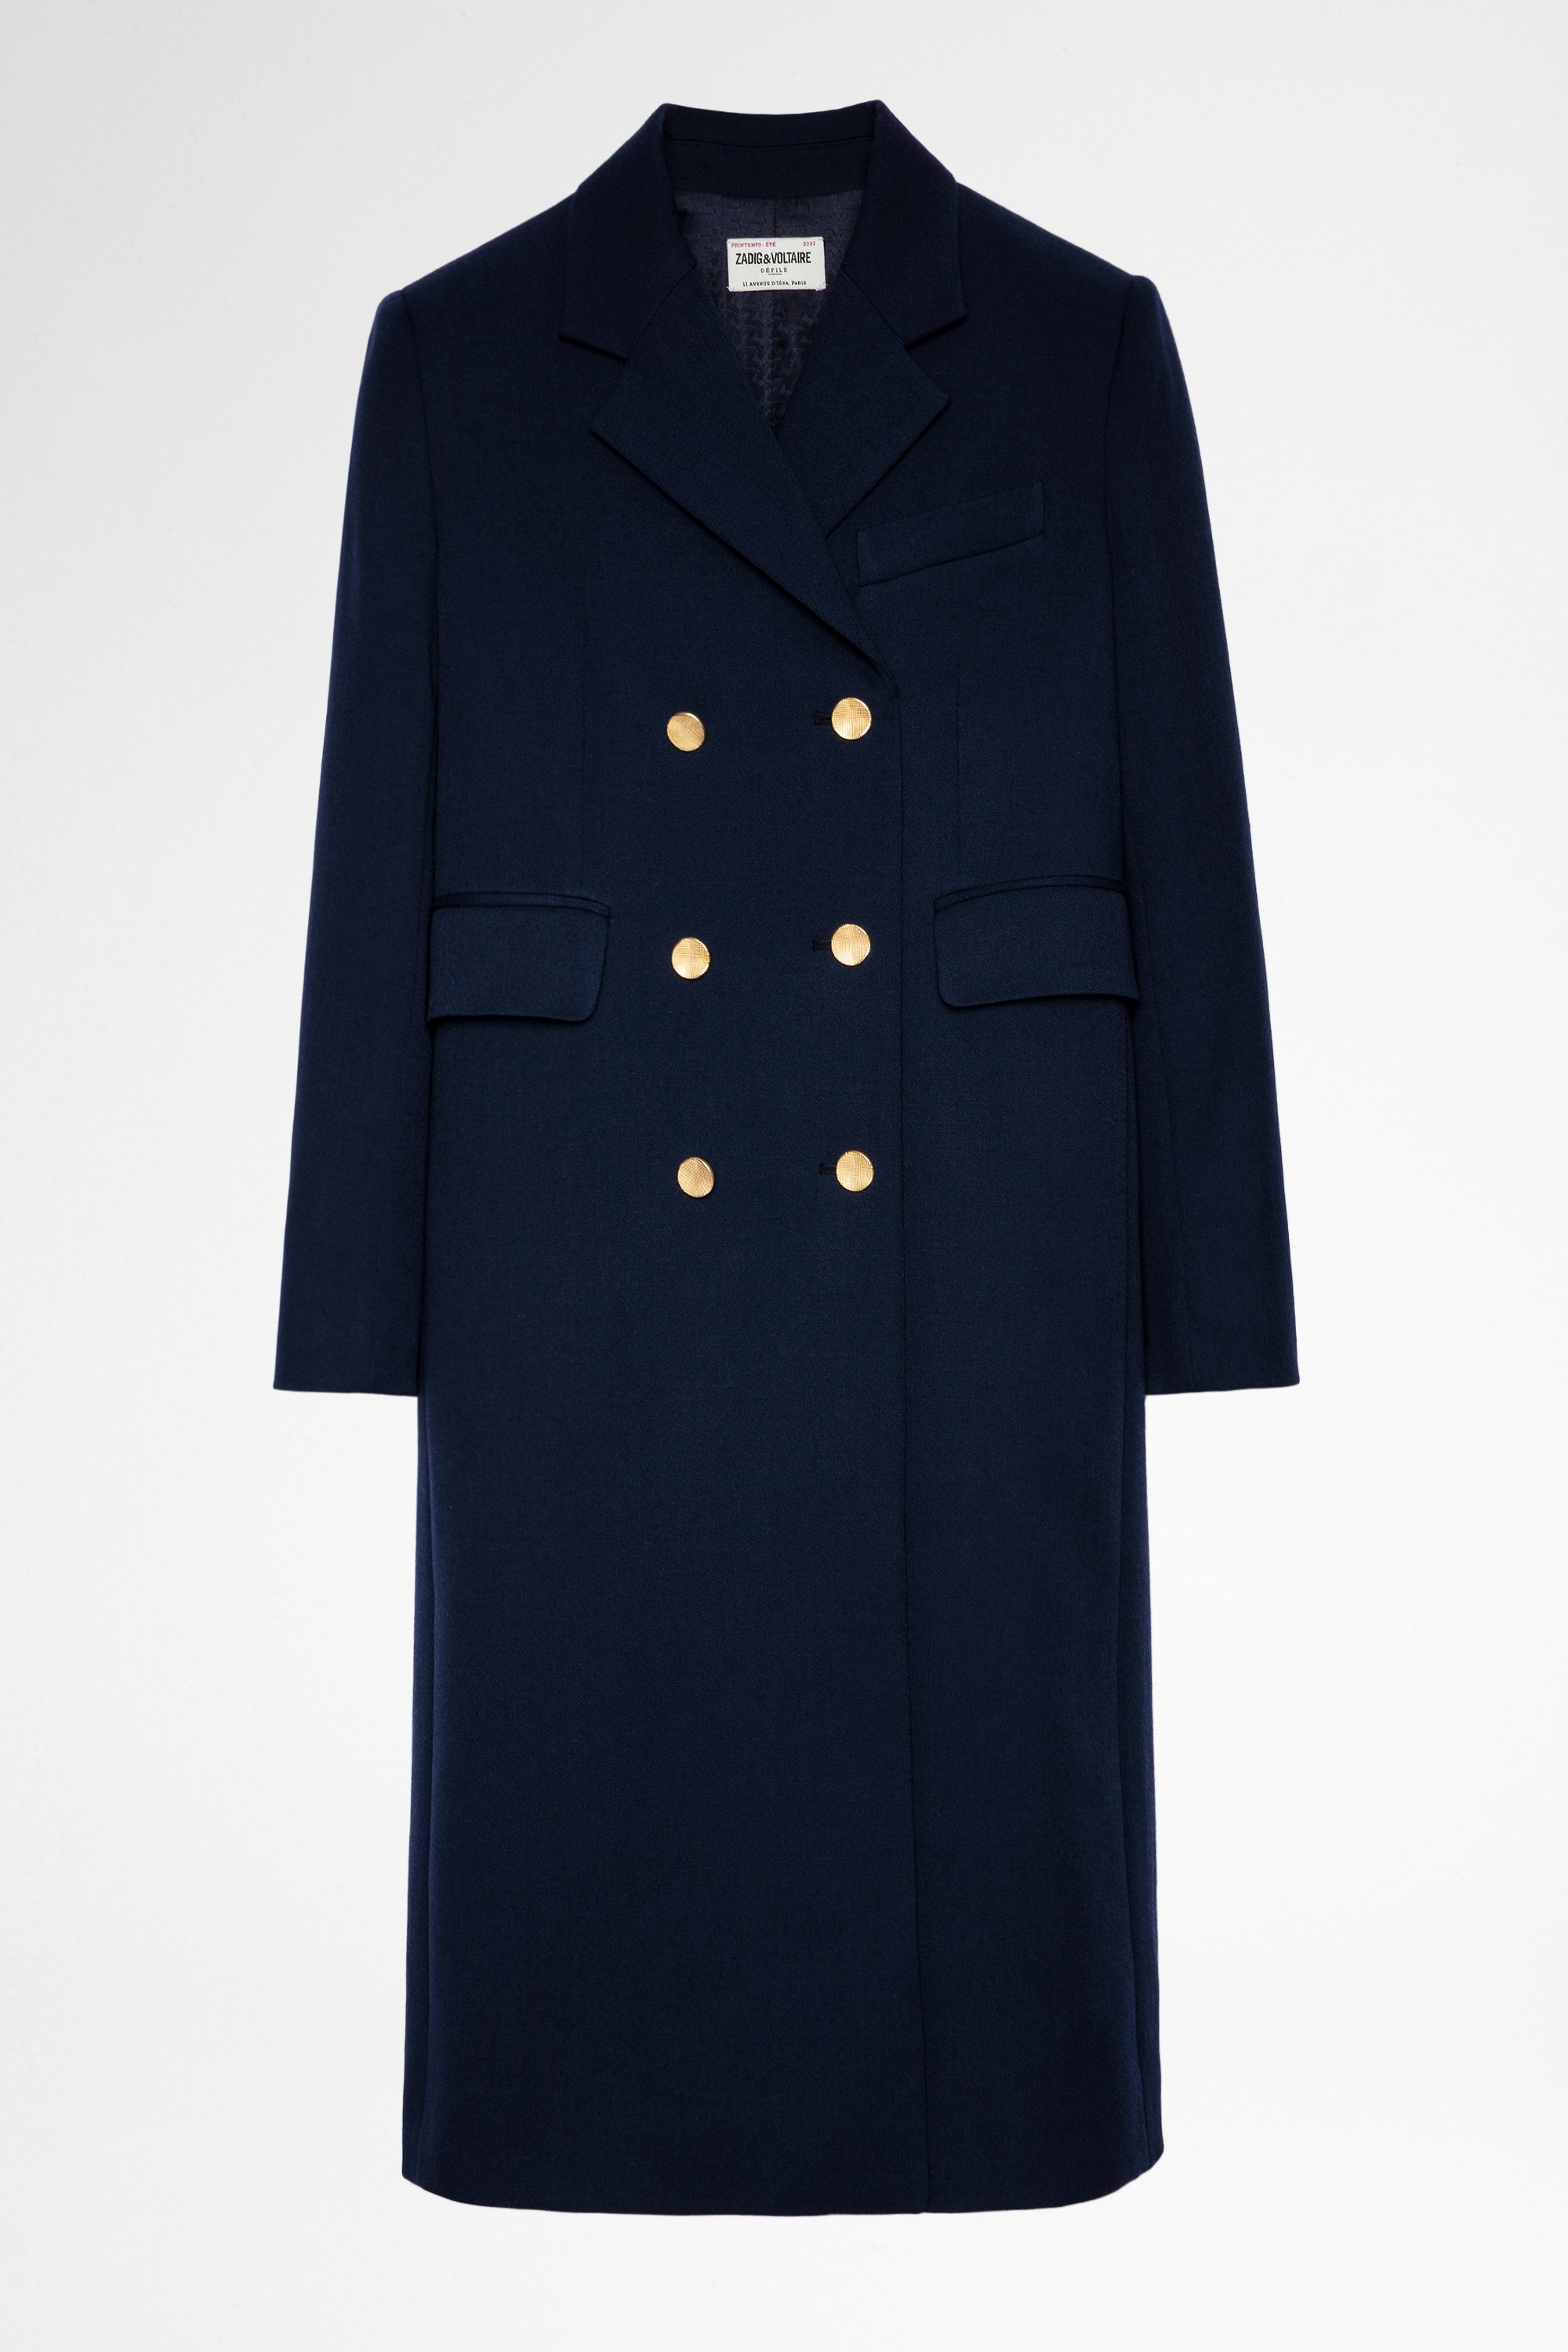 Cappotto Maestro Cappotto da ufficiale blu navy con bottoni dorati, donna